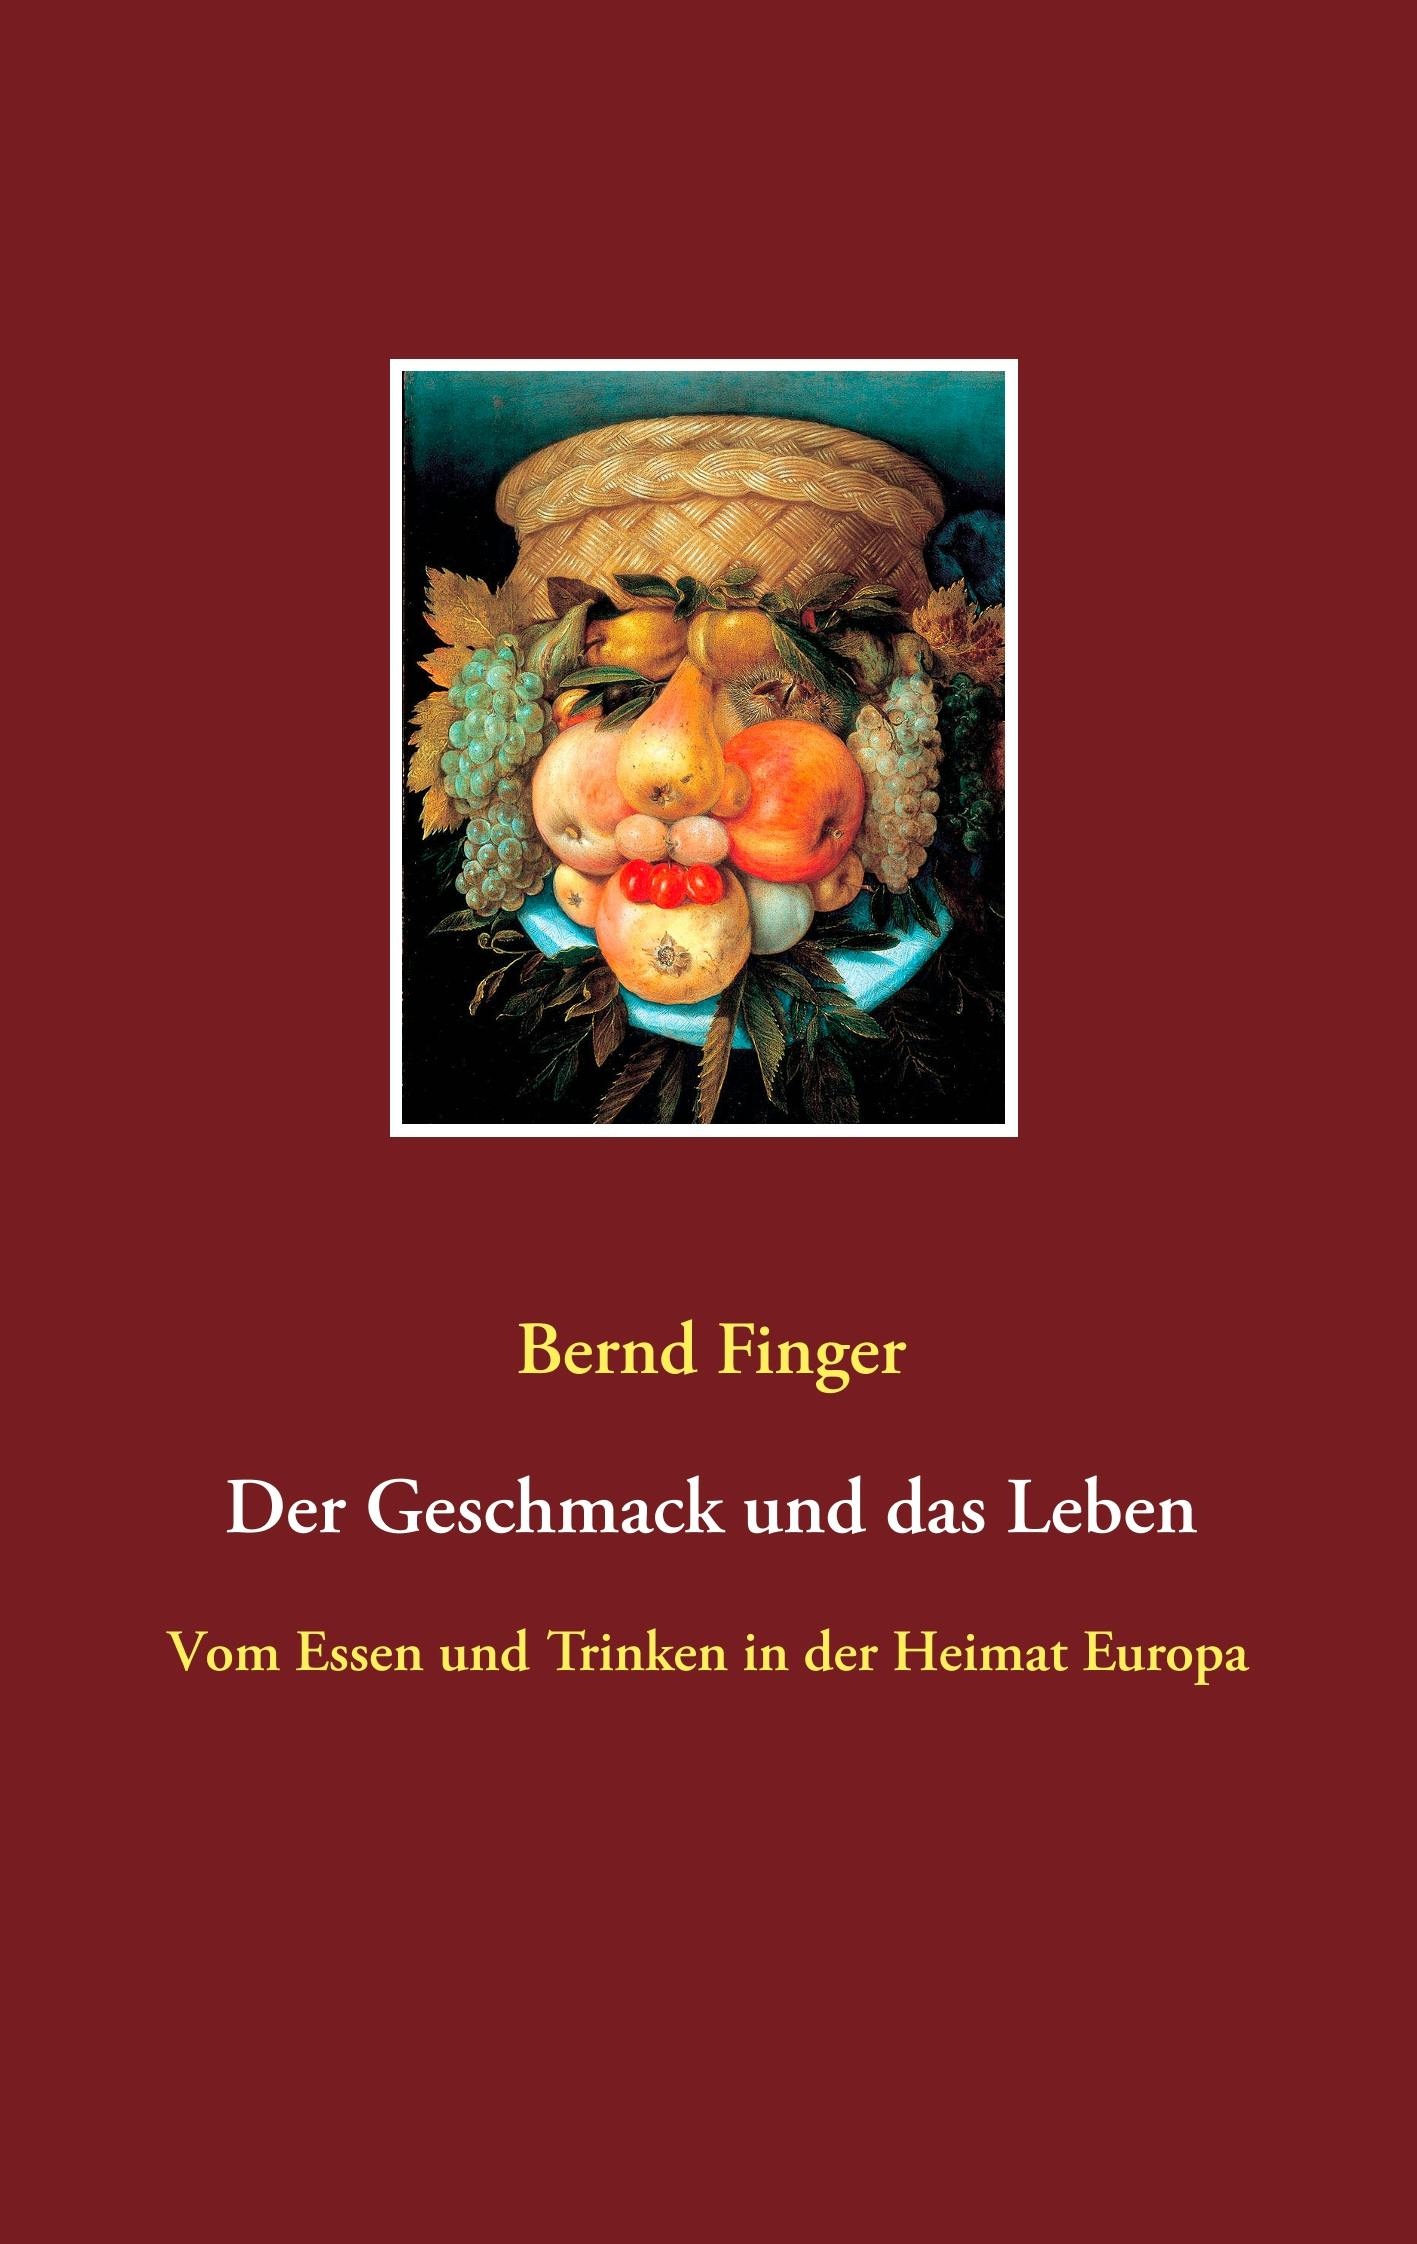 Der Geschmack und das Leben - Bernd Finger